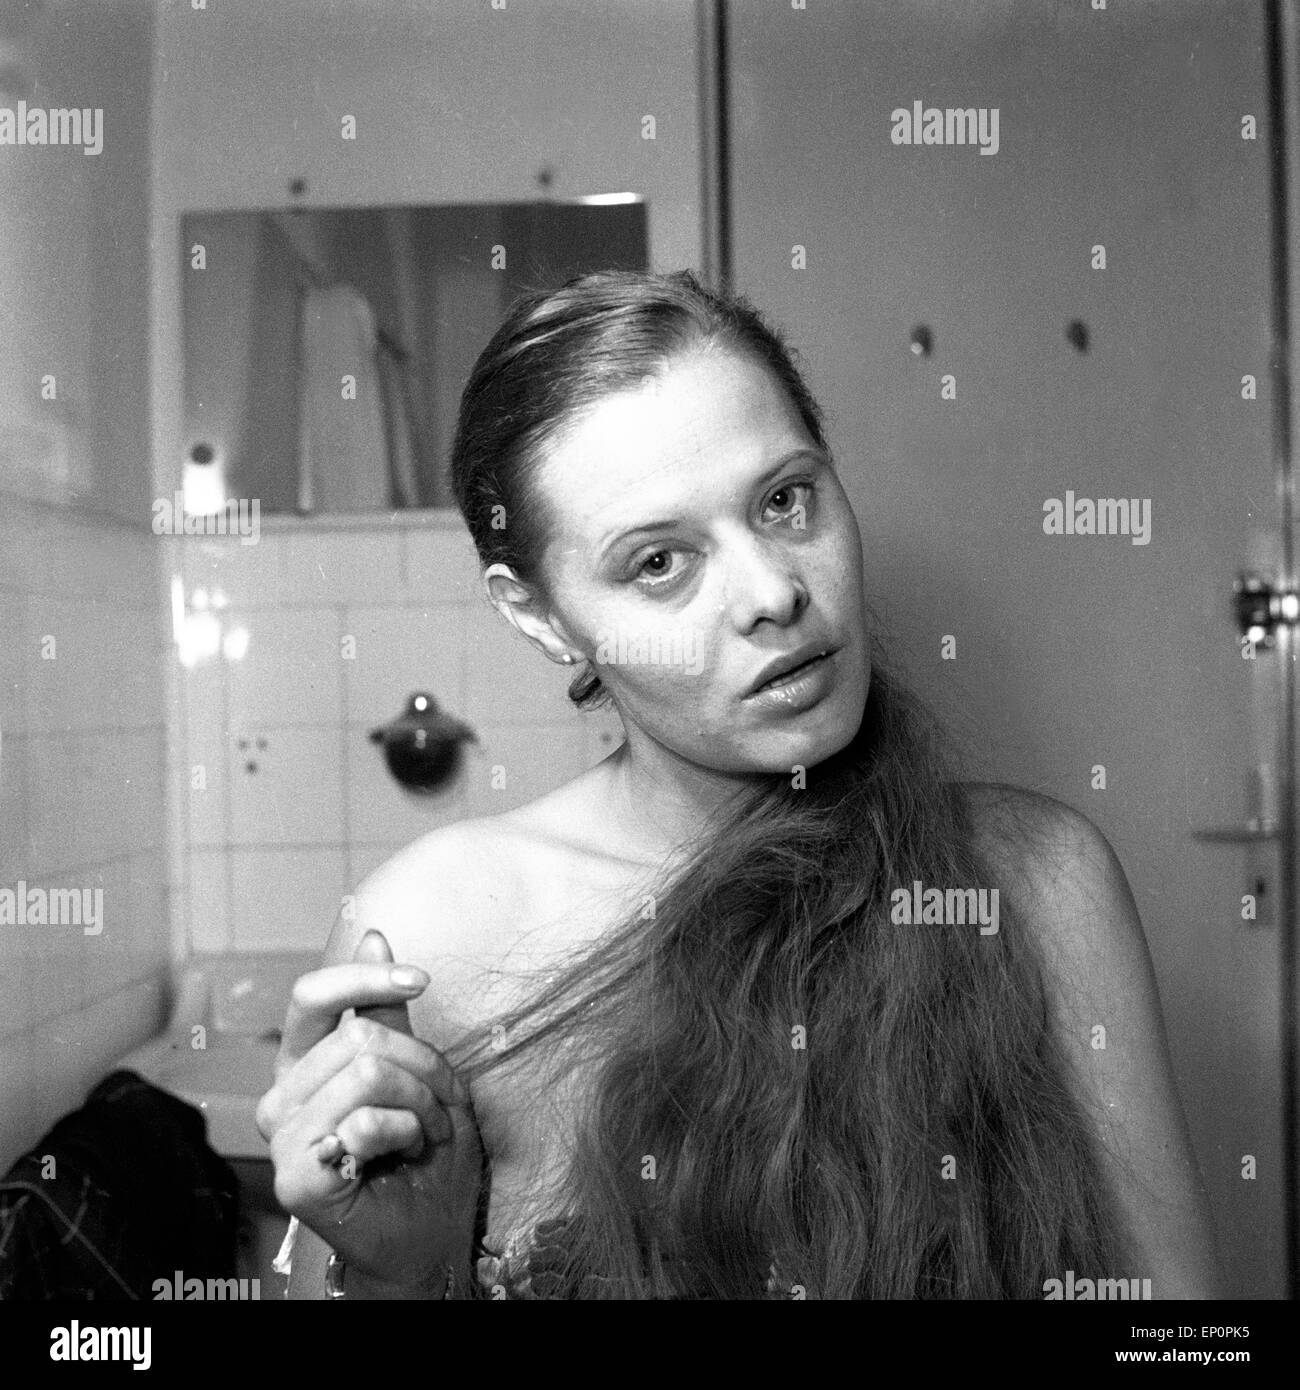 Eine junge Frau im Badezimmer im Deutschland der 1950er Jahre. A young woman in a bathroom, Germany 1950s. Stock Photo